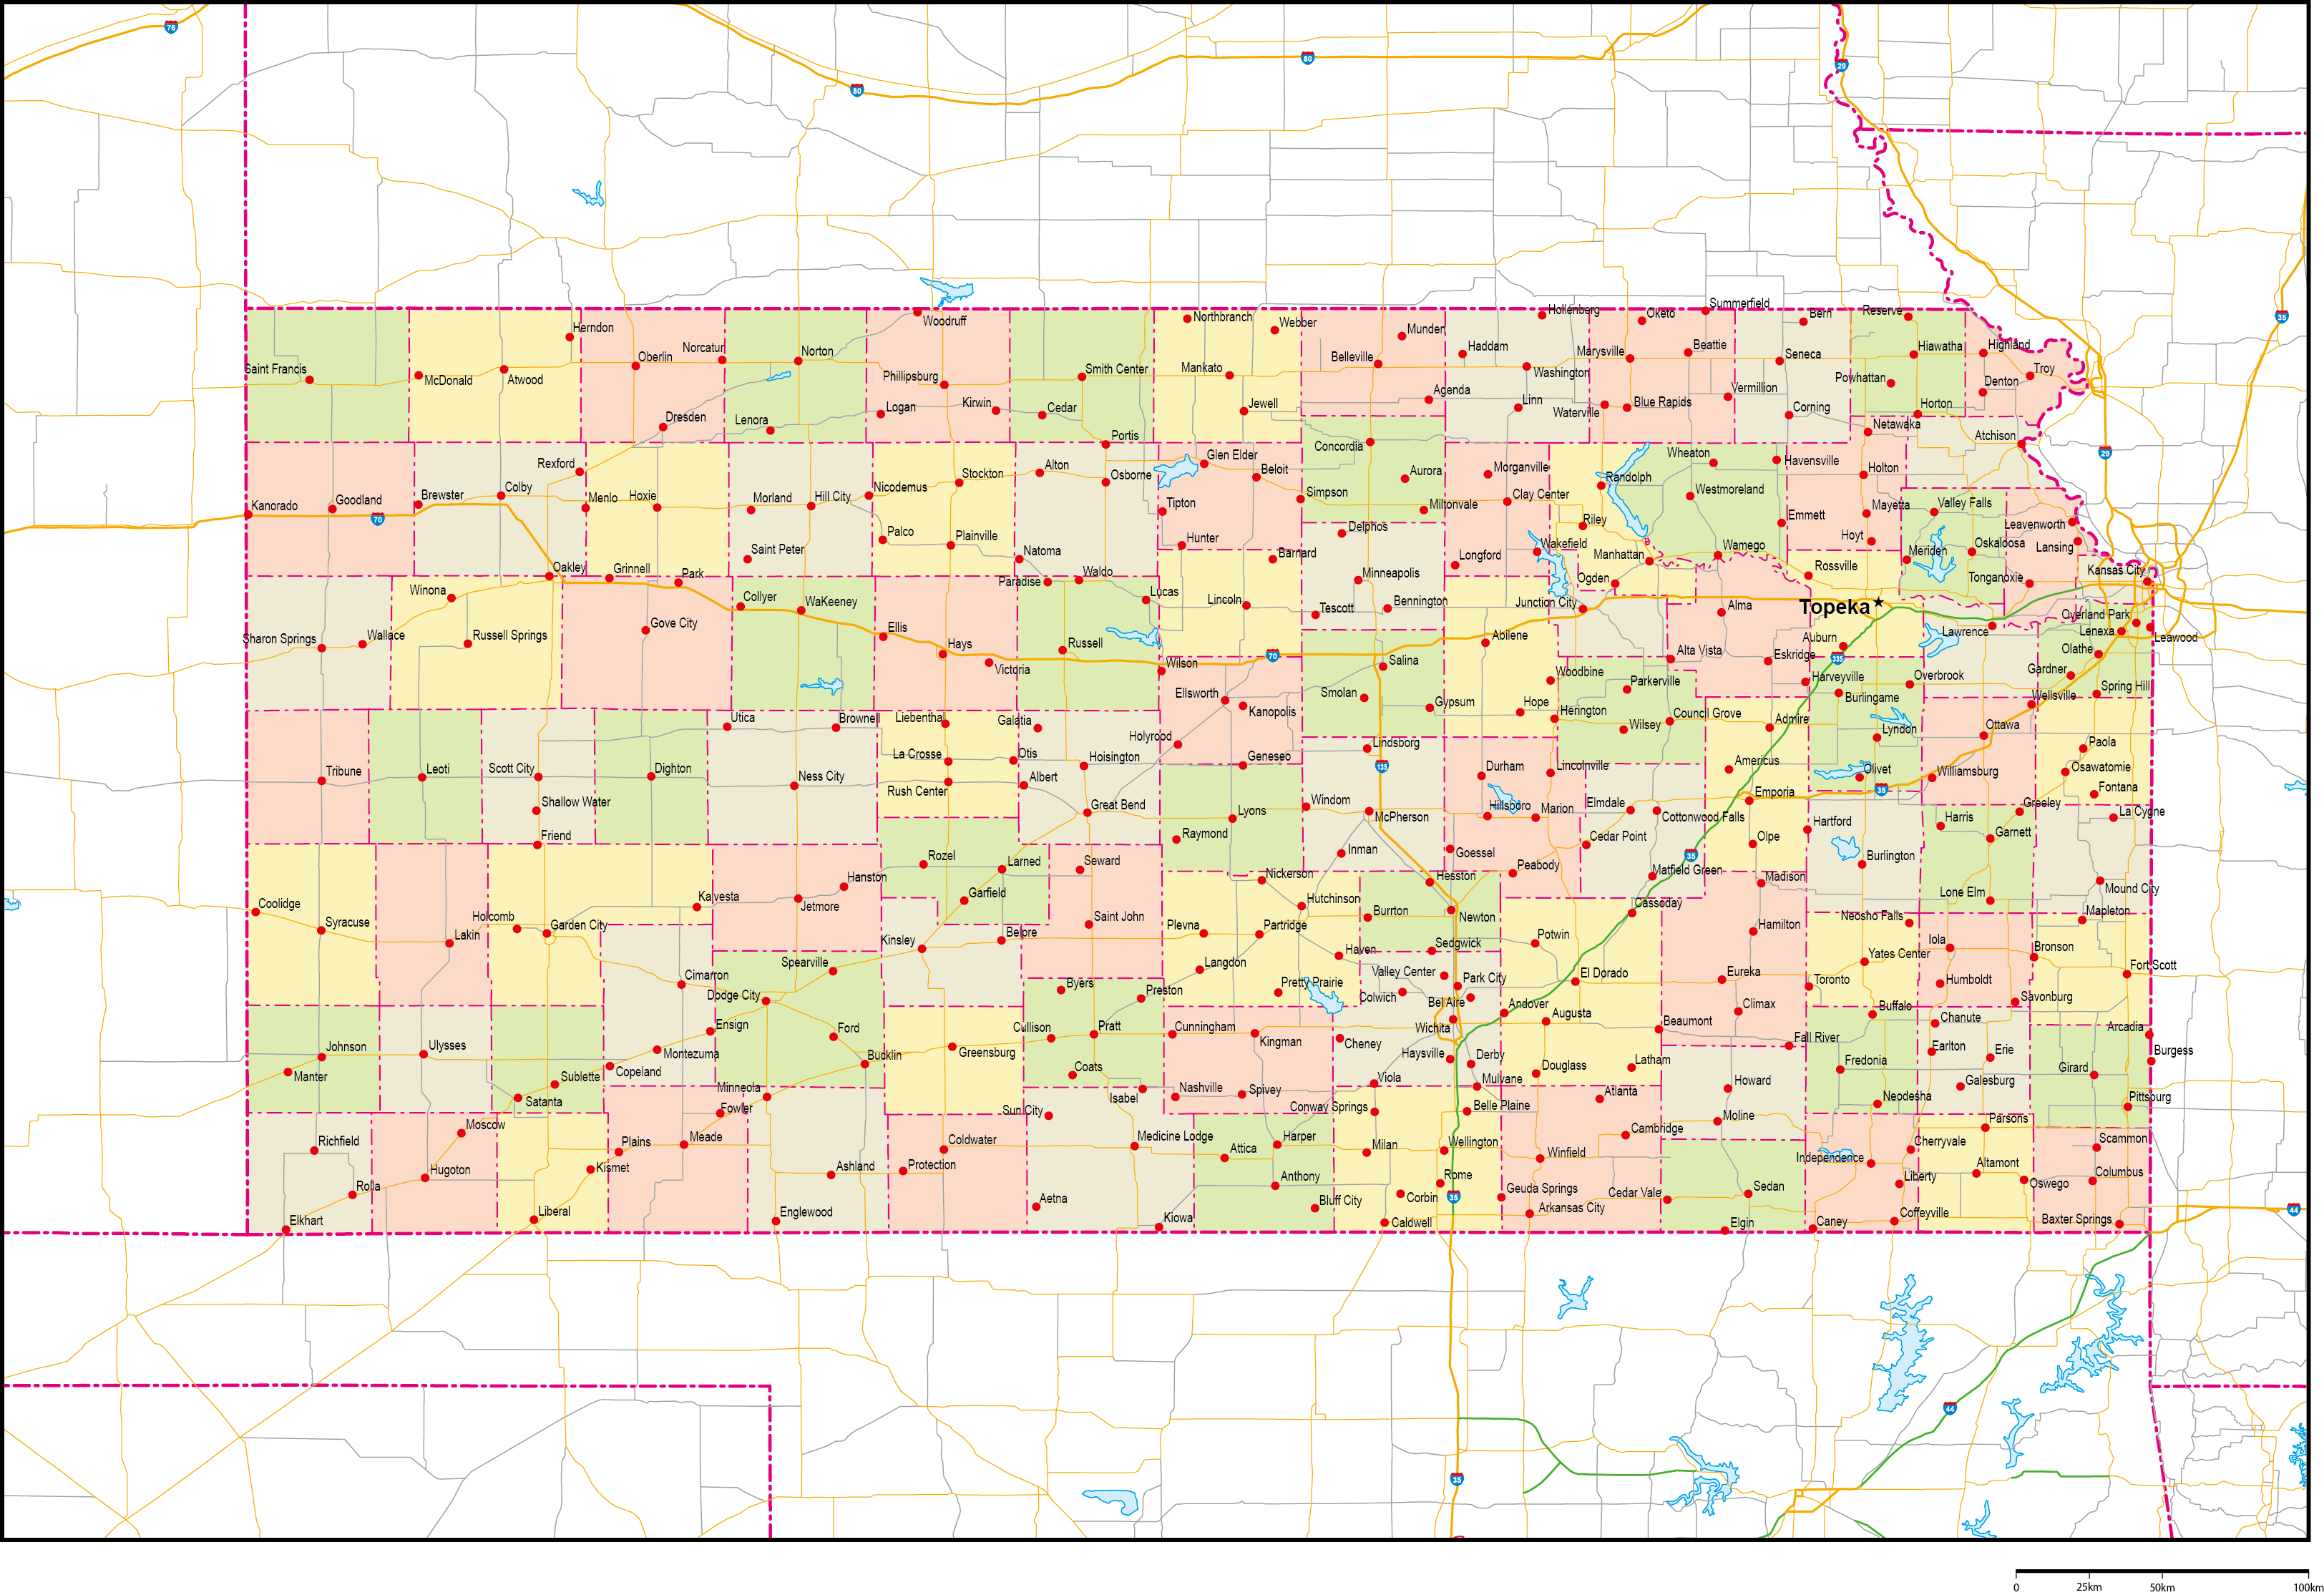 カンザス州郡色分け地図州都・主な都市・道路あり(英語)フリーデータの画像